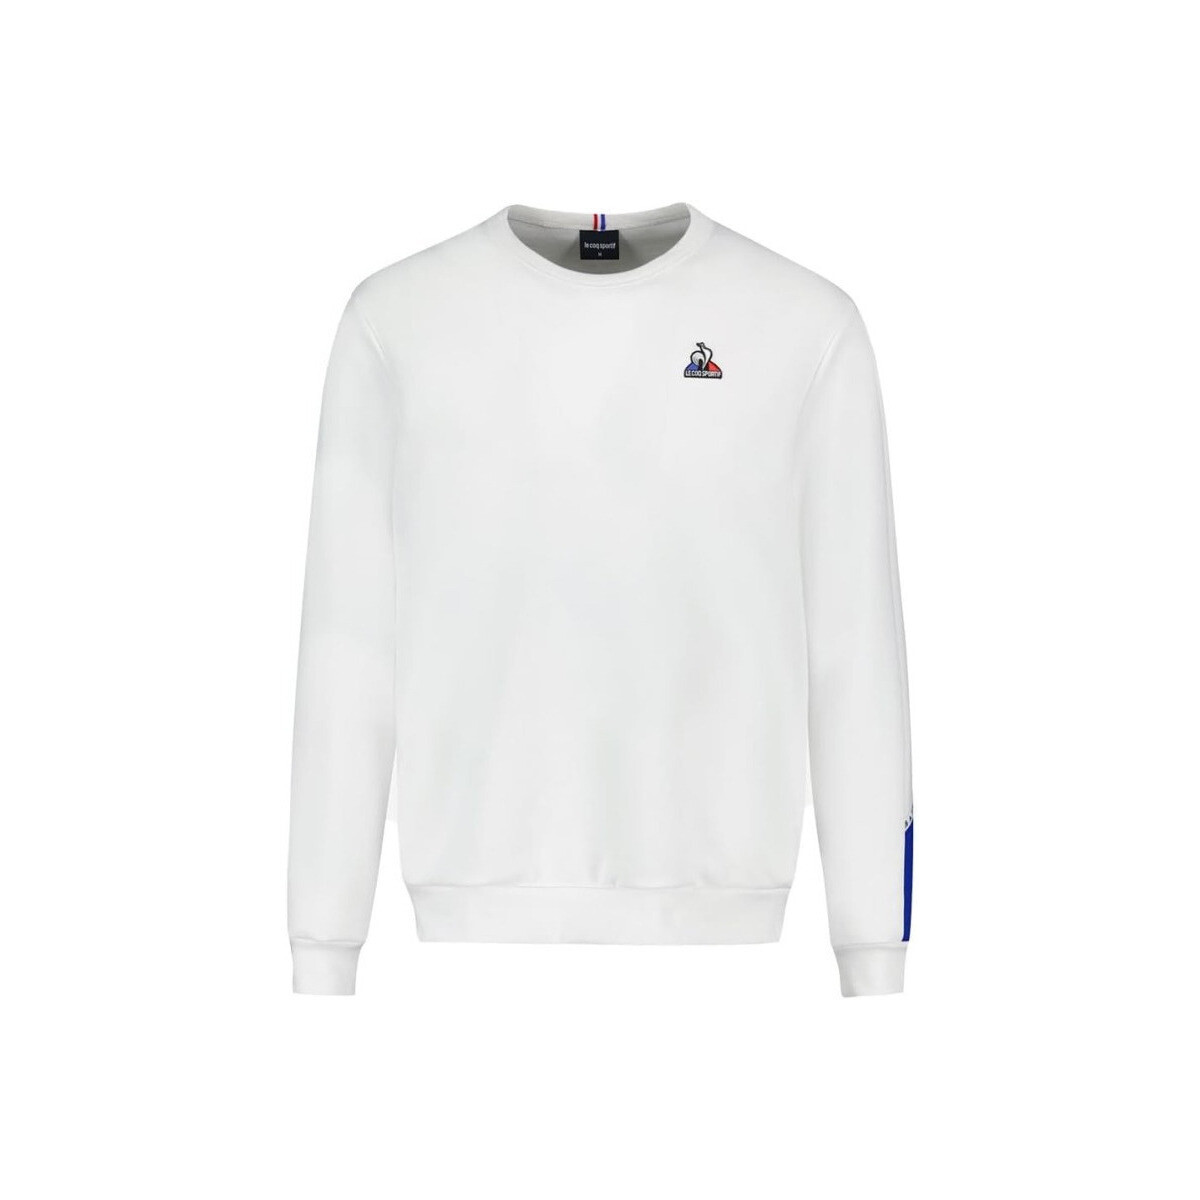 Vêtements Homme Sweats Le Coq Sportif Sweatshirt Mixte Blanc